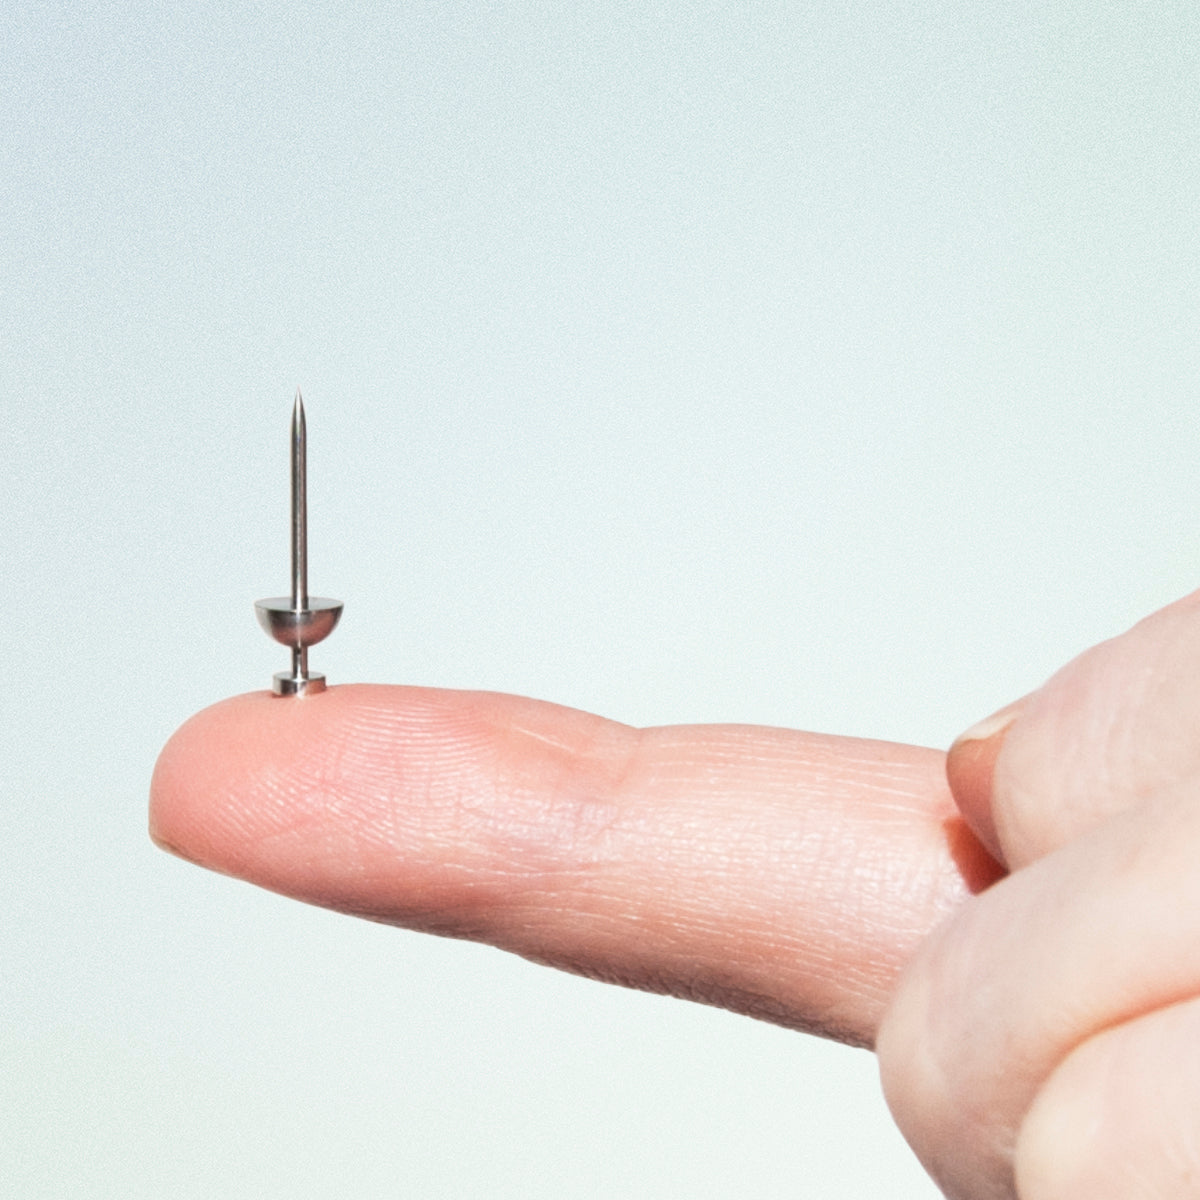 mini metal push pin on finger